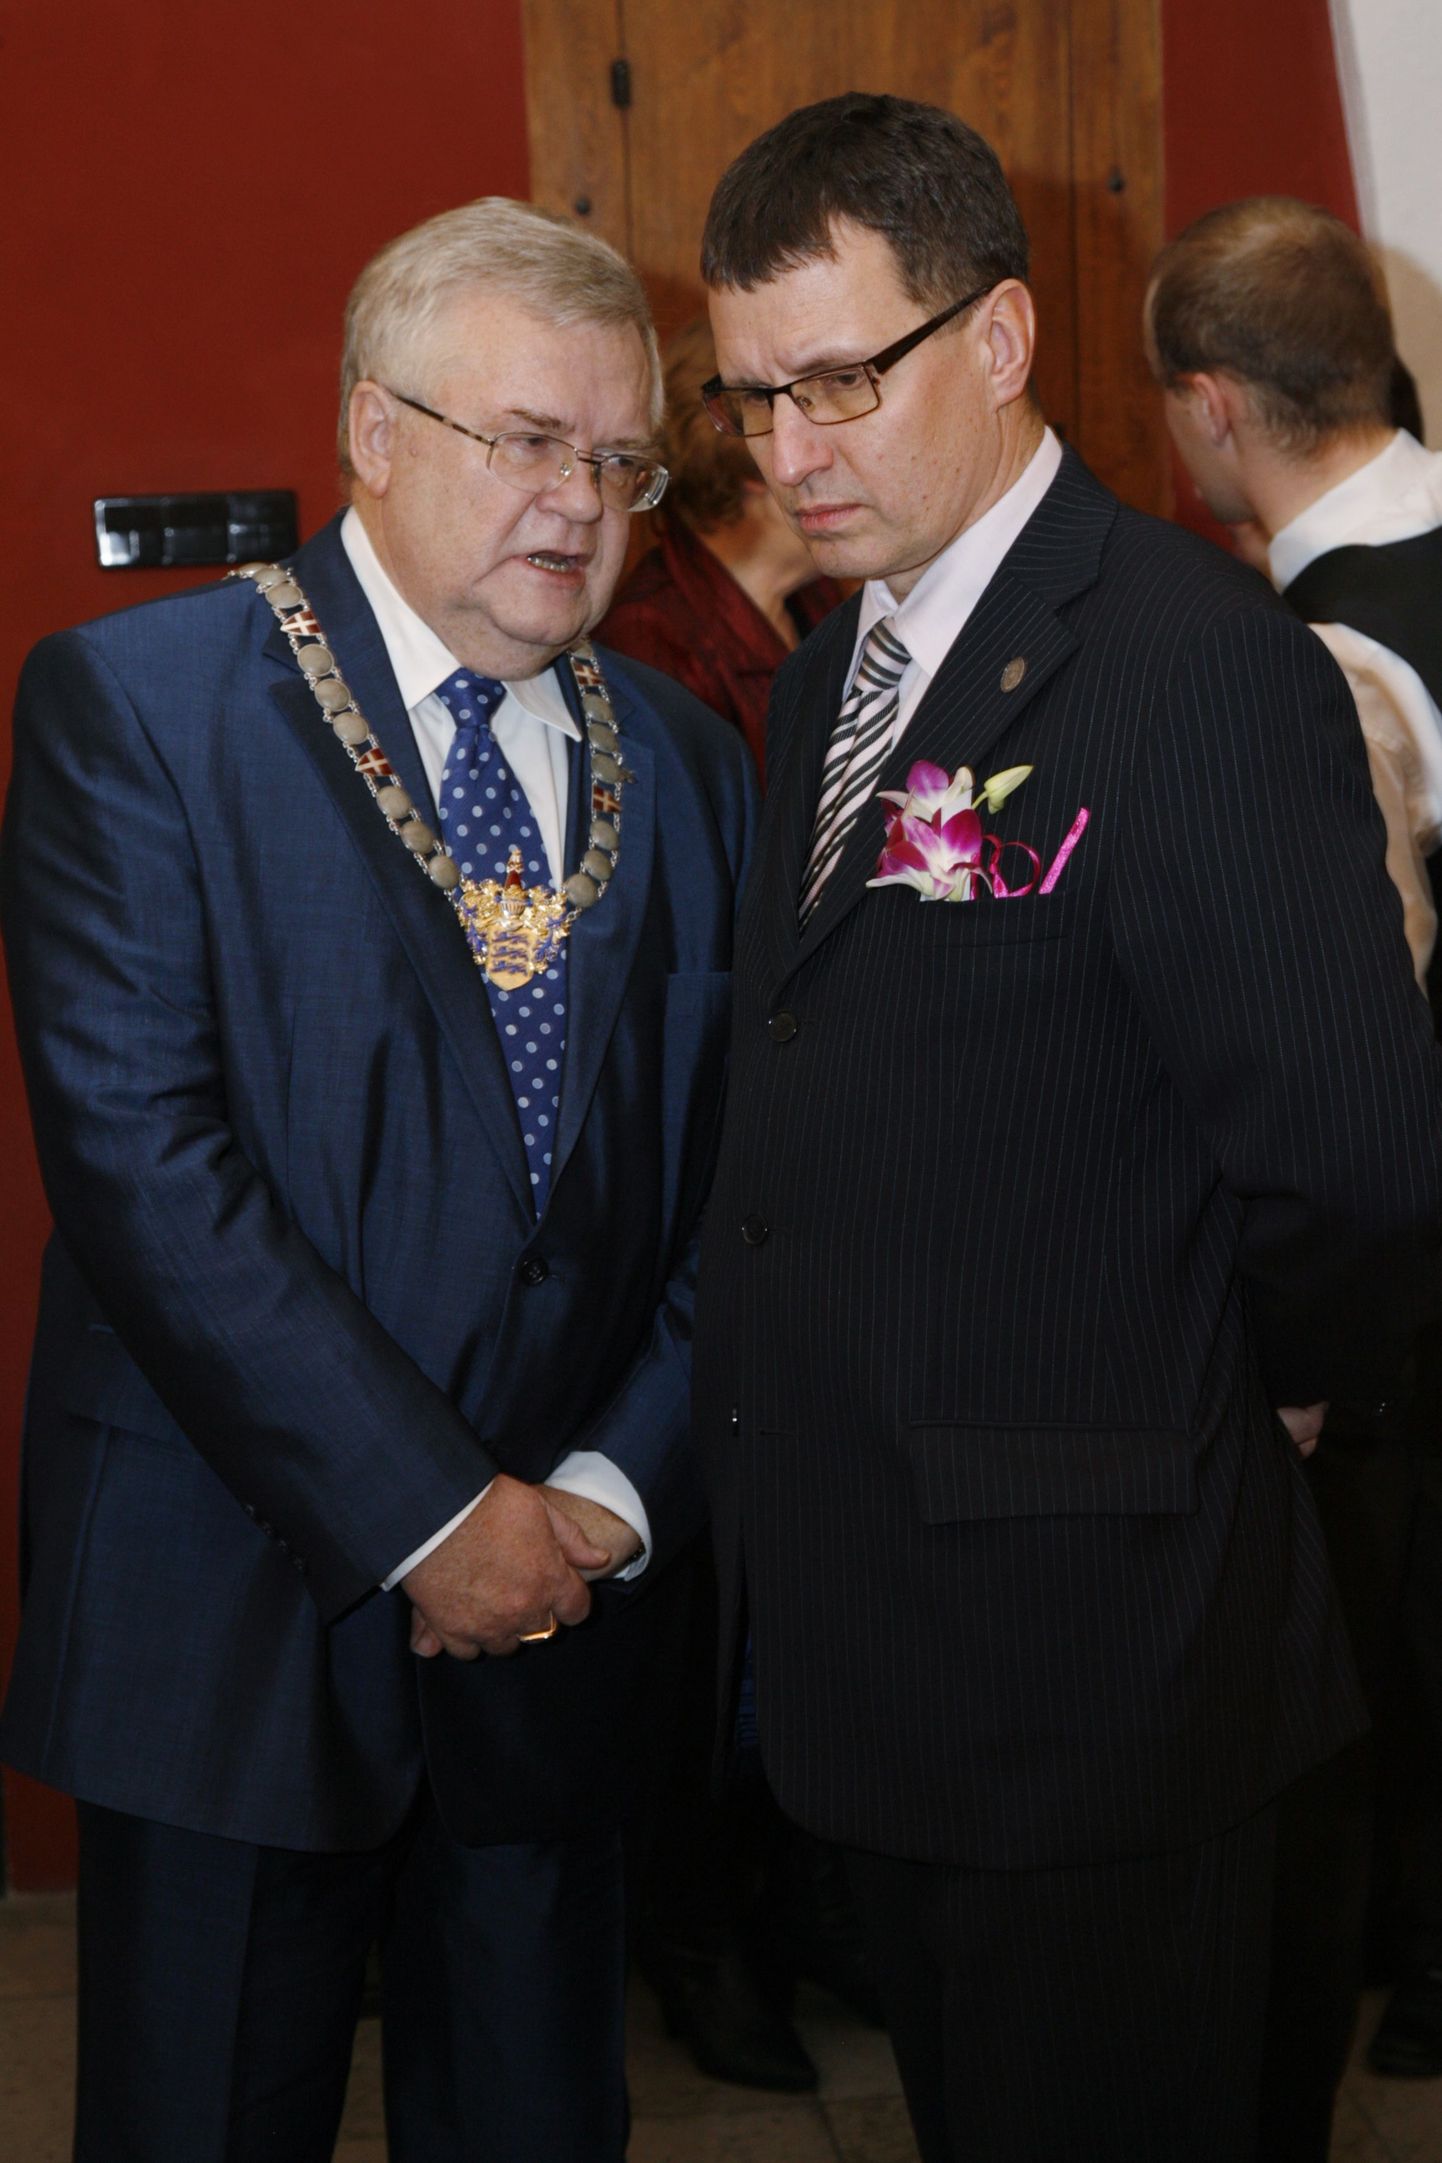 Tallinna linnavolikogu esimees Toomas Vitsut (paremal) koos linnapea Edgar Savisaarega.